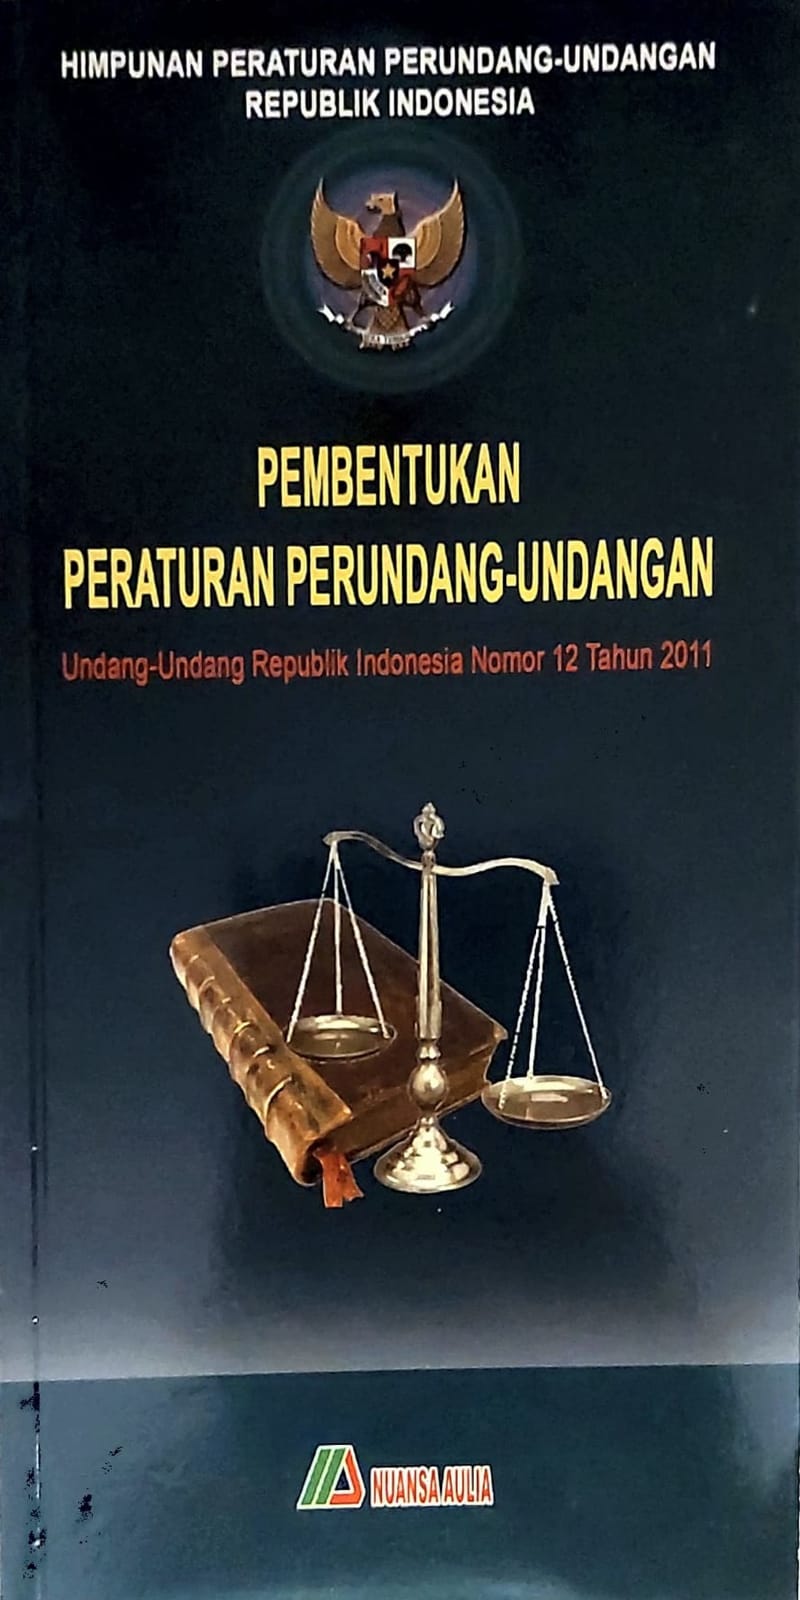 Pembentukan peraturan perundang-undangan undang-undang ri nomor 12 tahun 2011